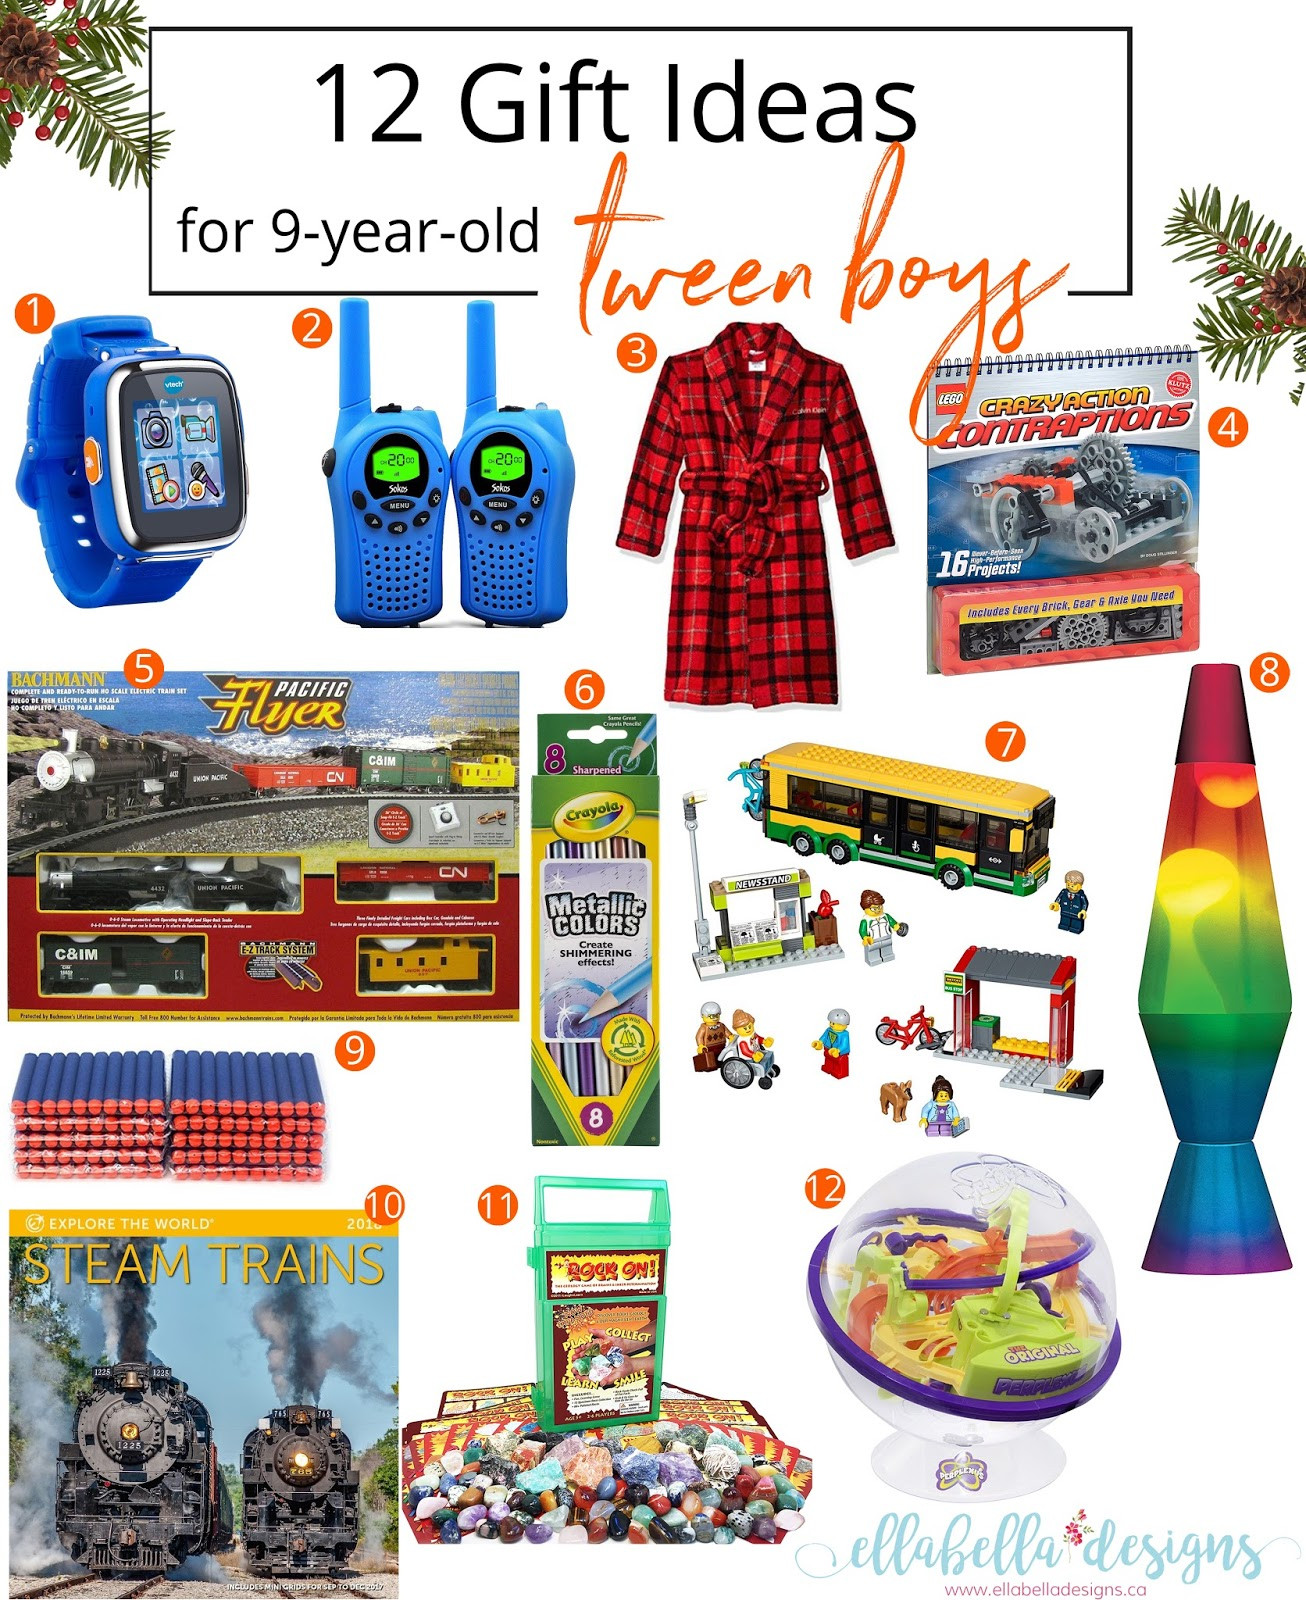 Gift Ideas For Boys 12
 Ellabella Designs 12 Gift Ideas for 9 year old Tween Boys